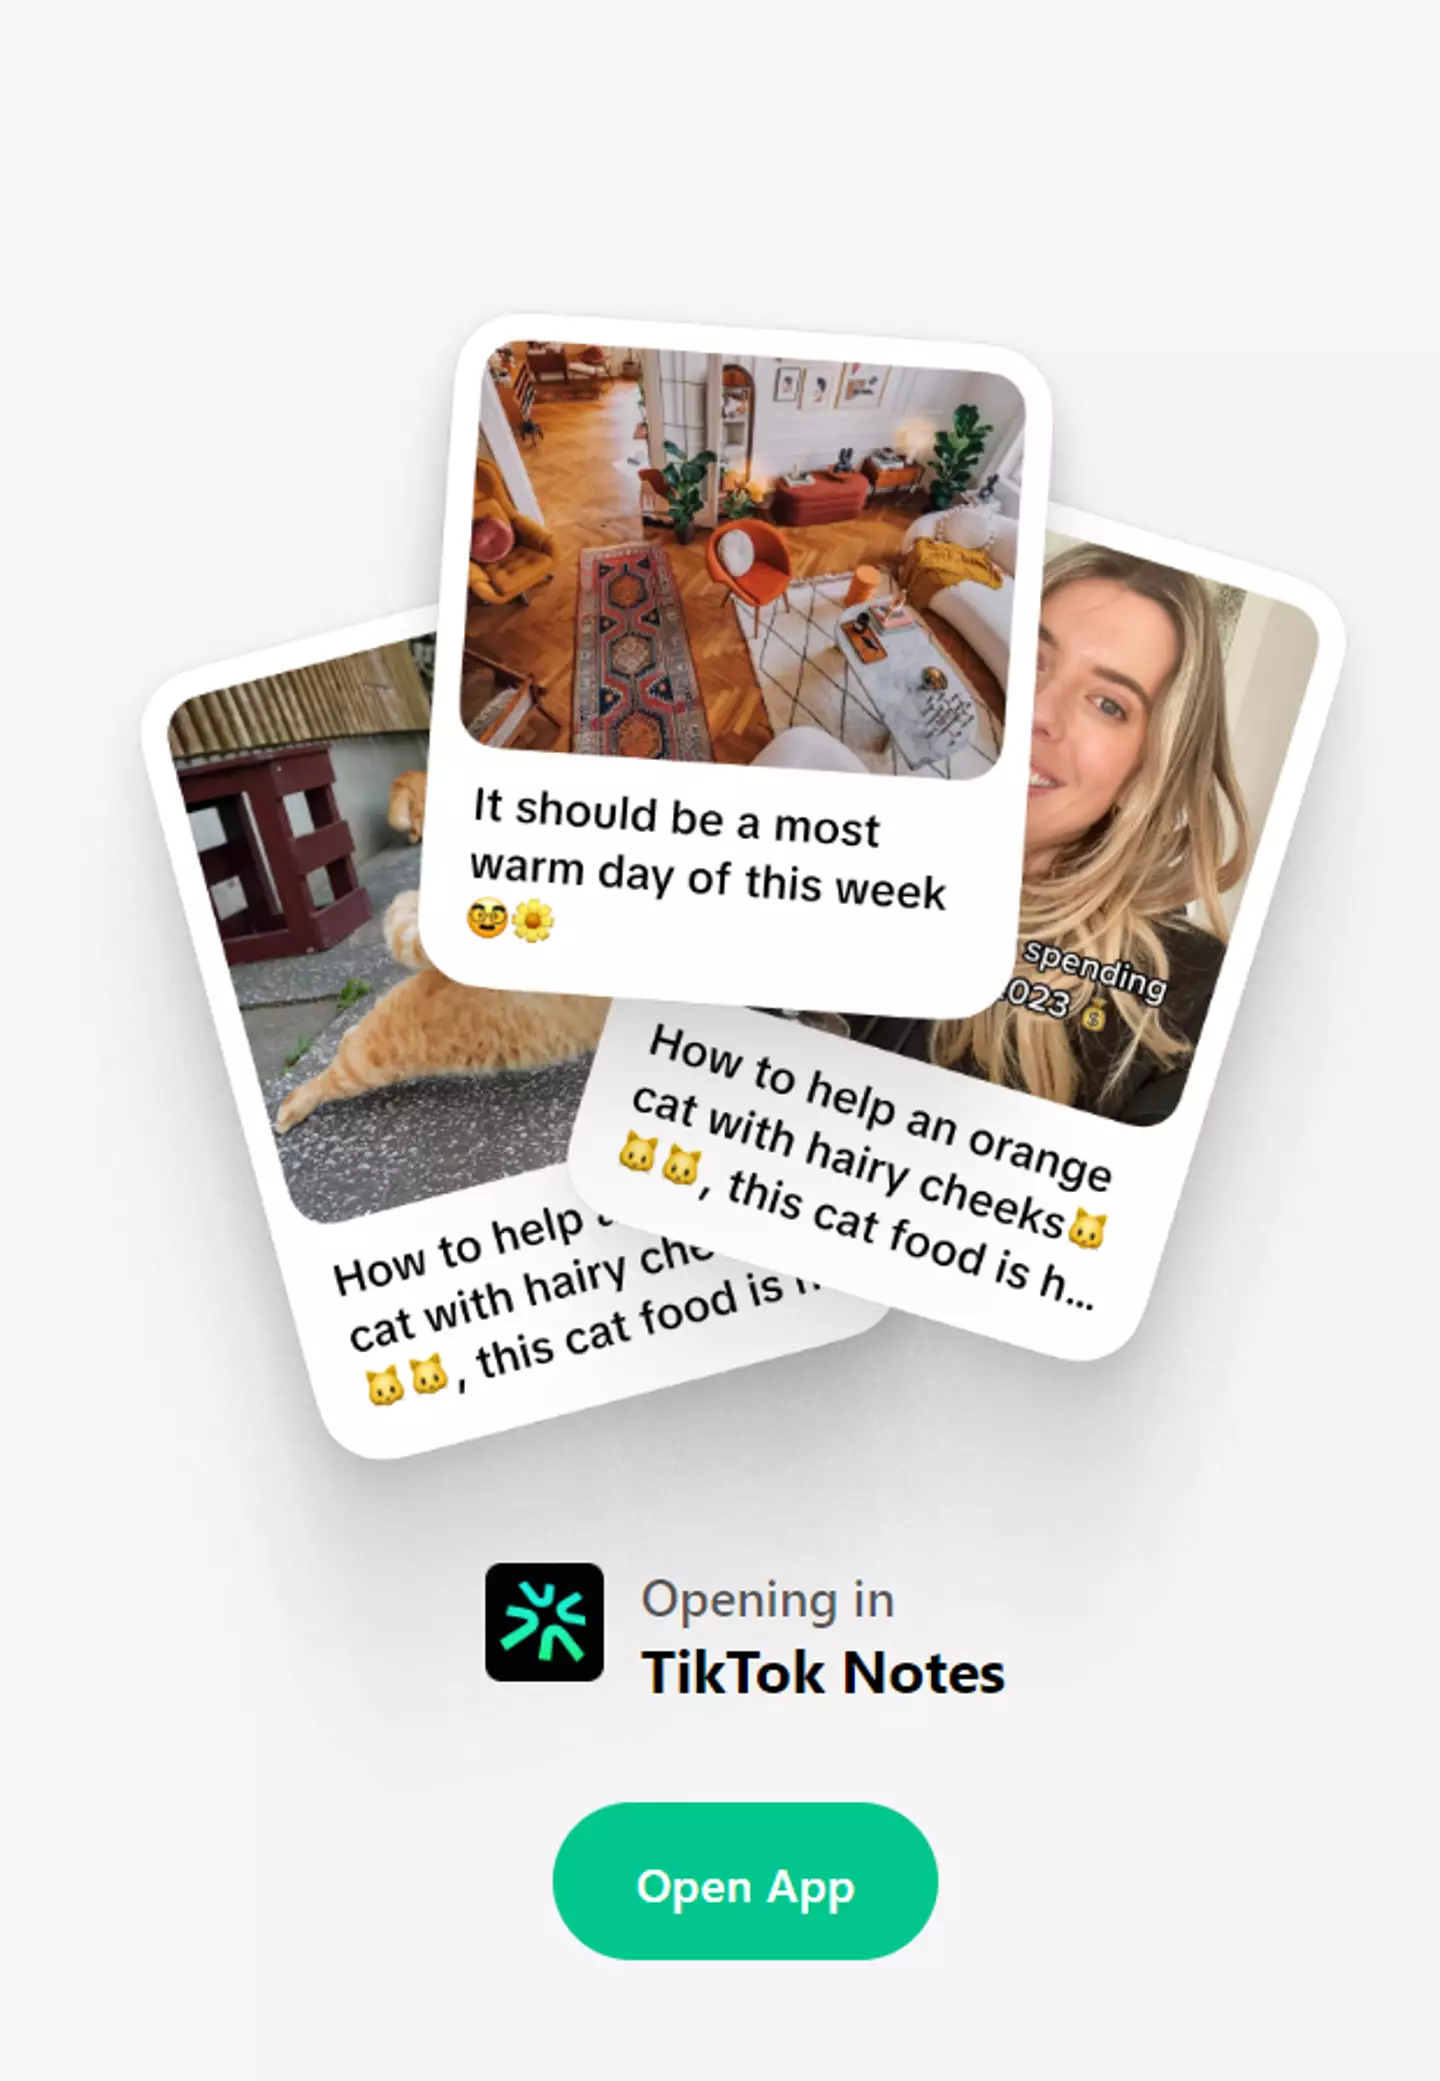 The site that says TikTok Notes.